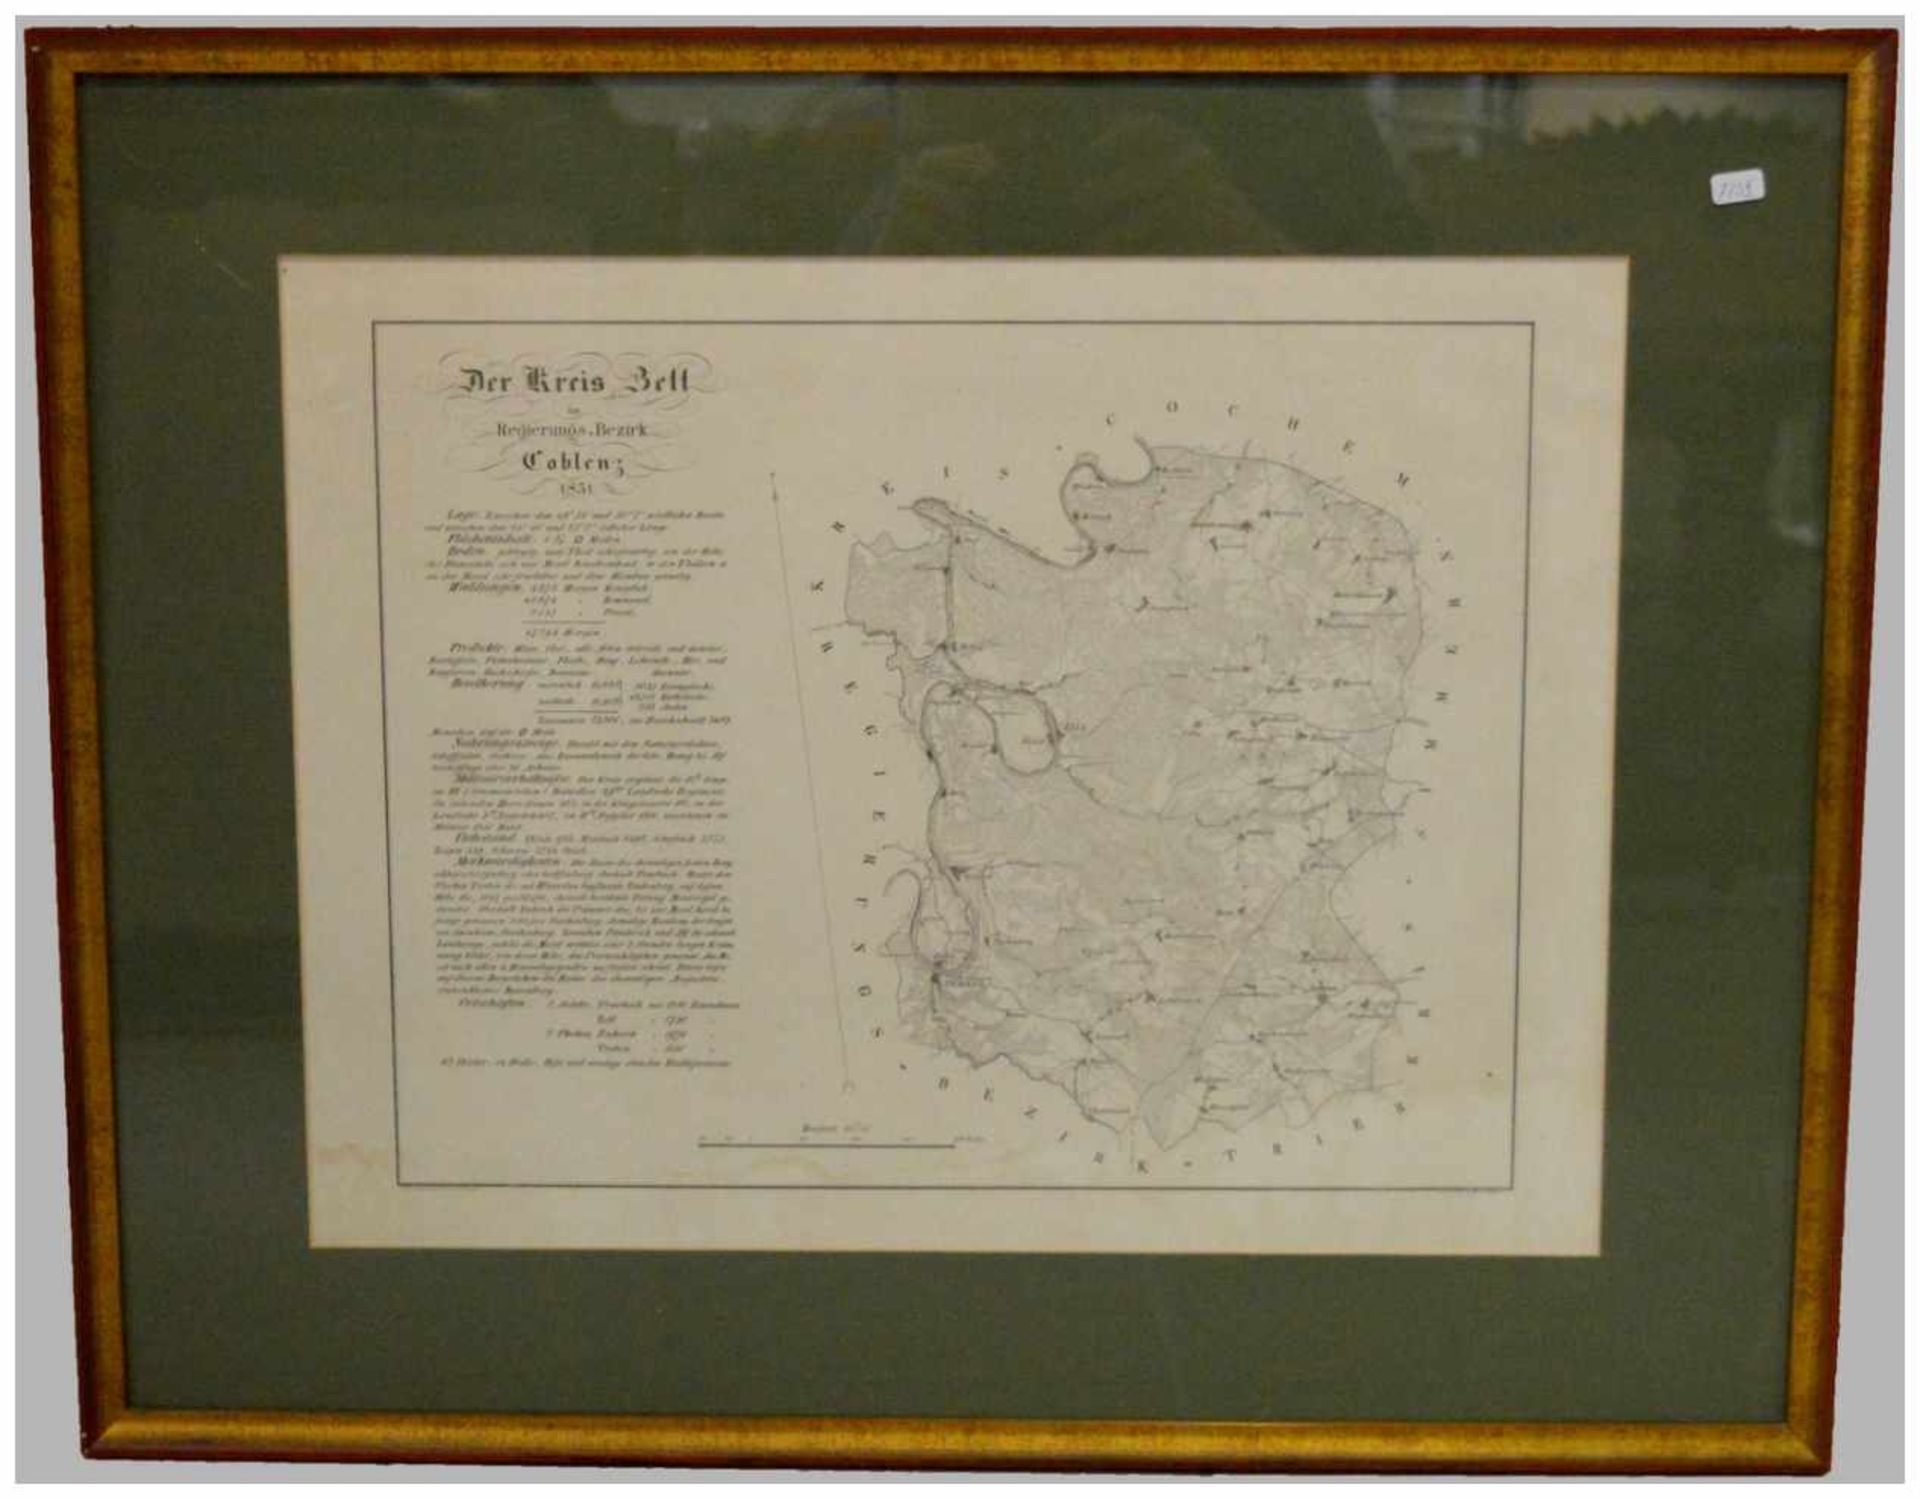 Landkarte Mosellauf, der Kreis Zell im Regierungsbezirk Koblenz 1831, im Rahmen, 51 X 64 cm